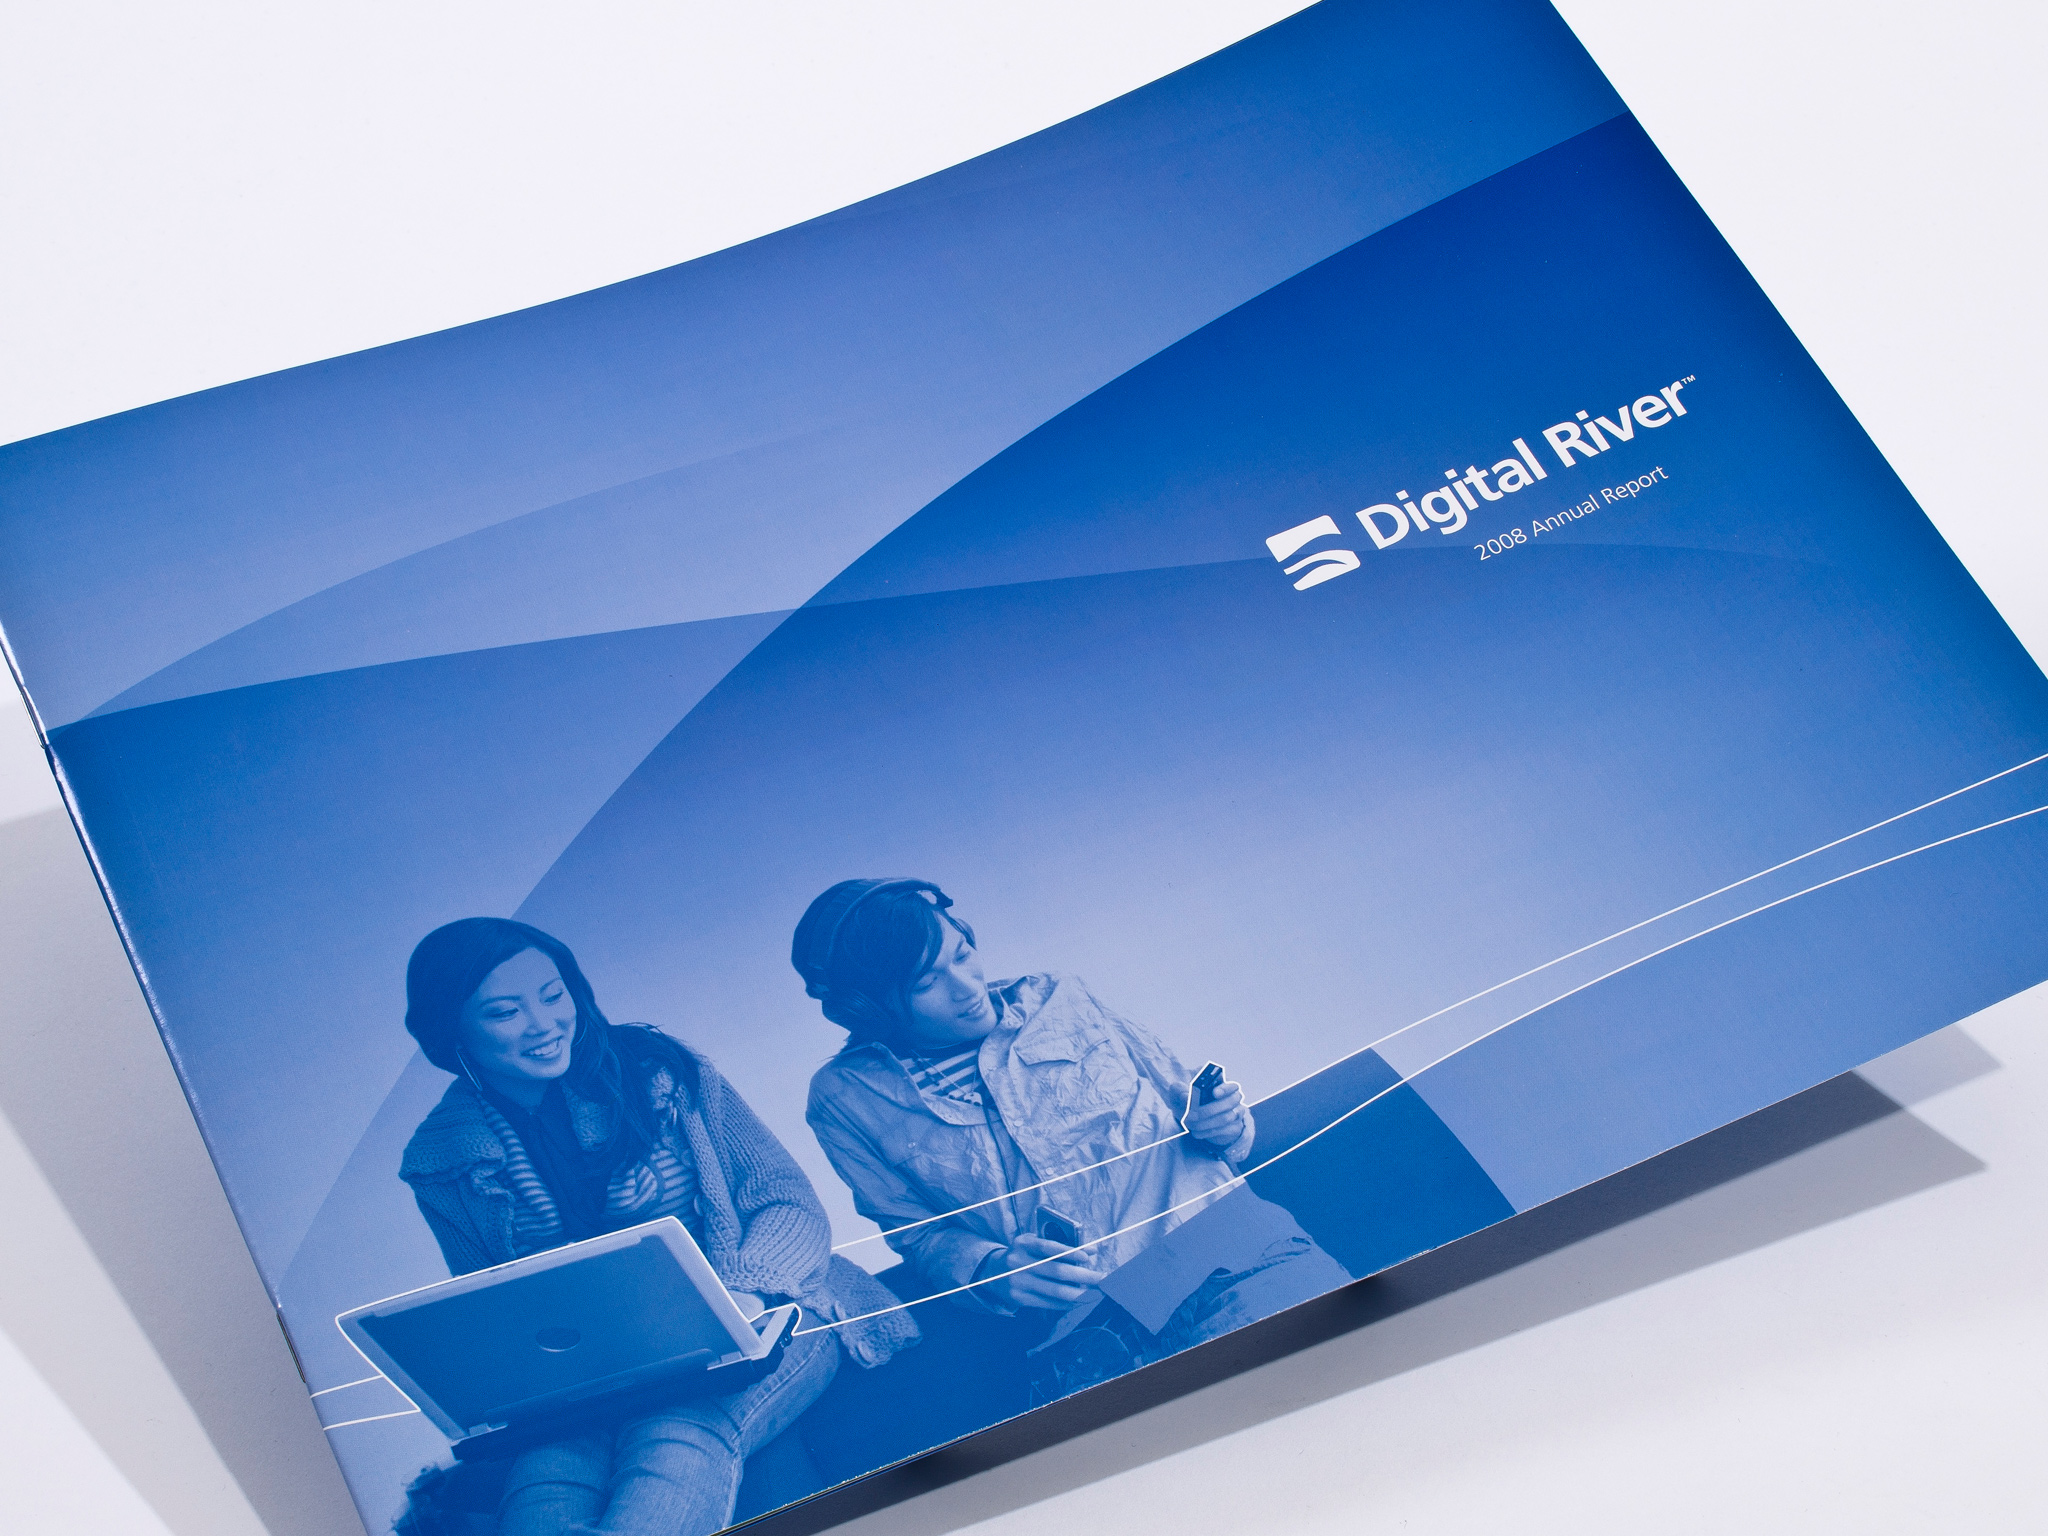 Digital River Annual Report